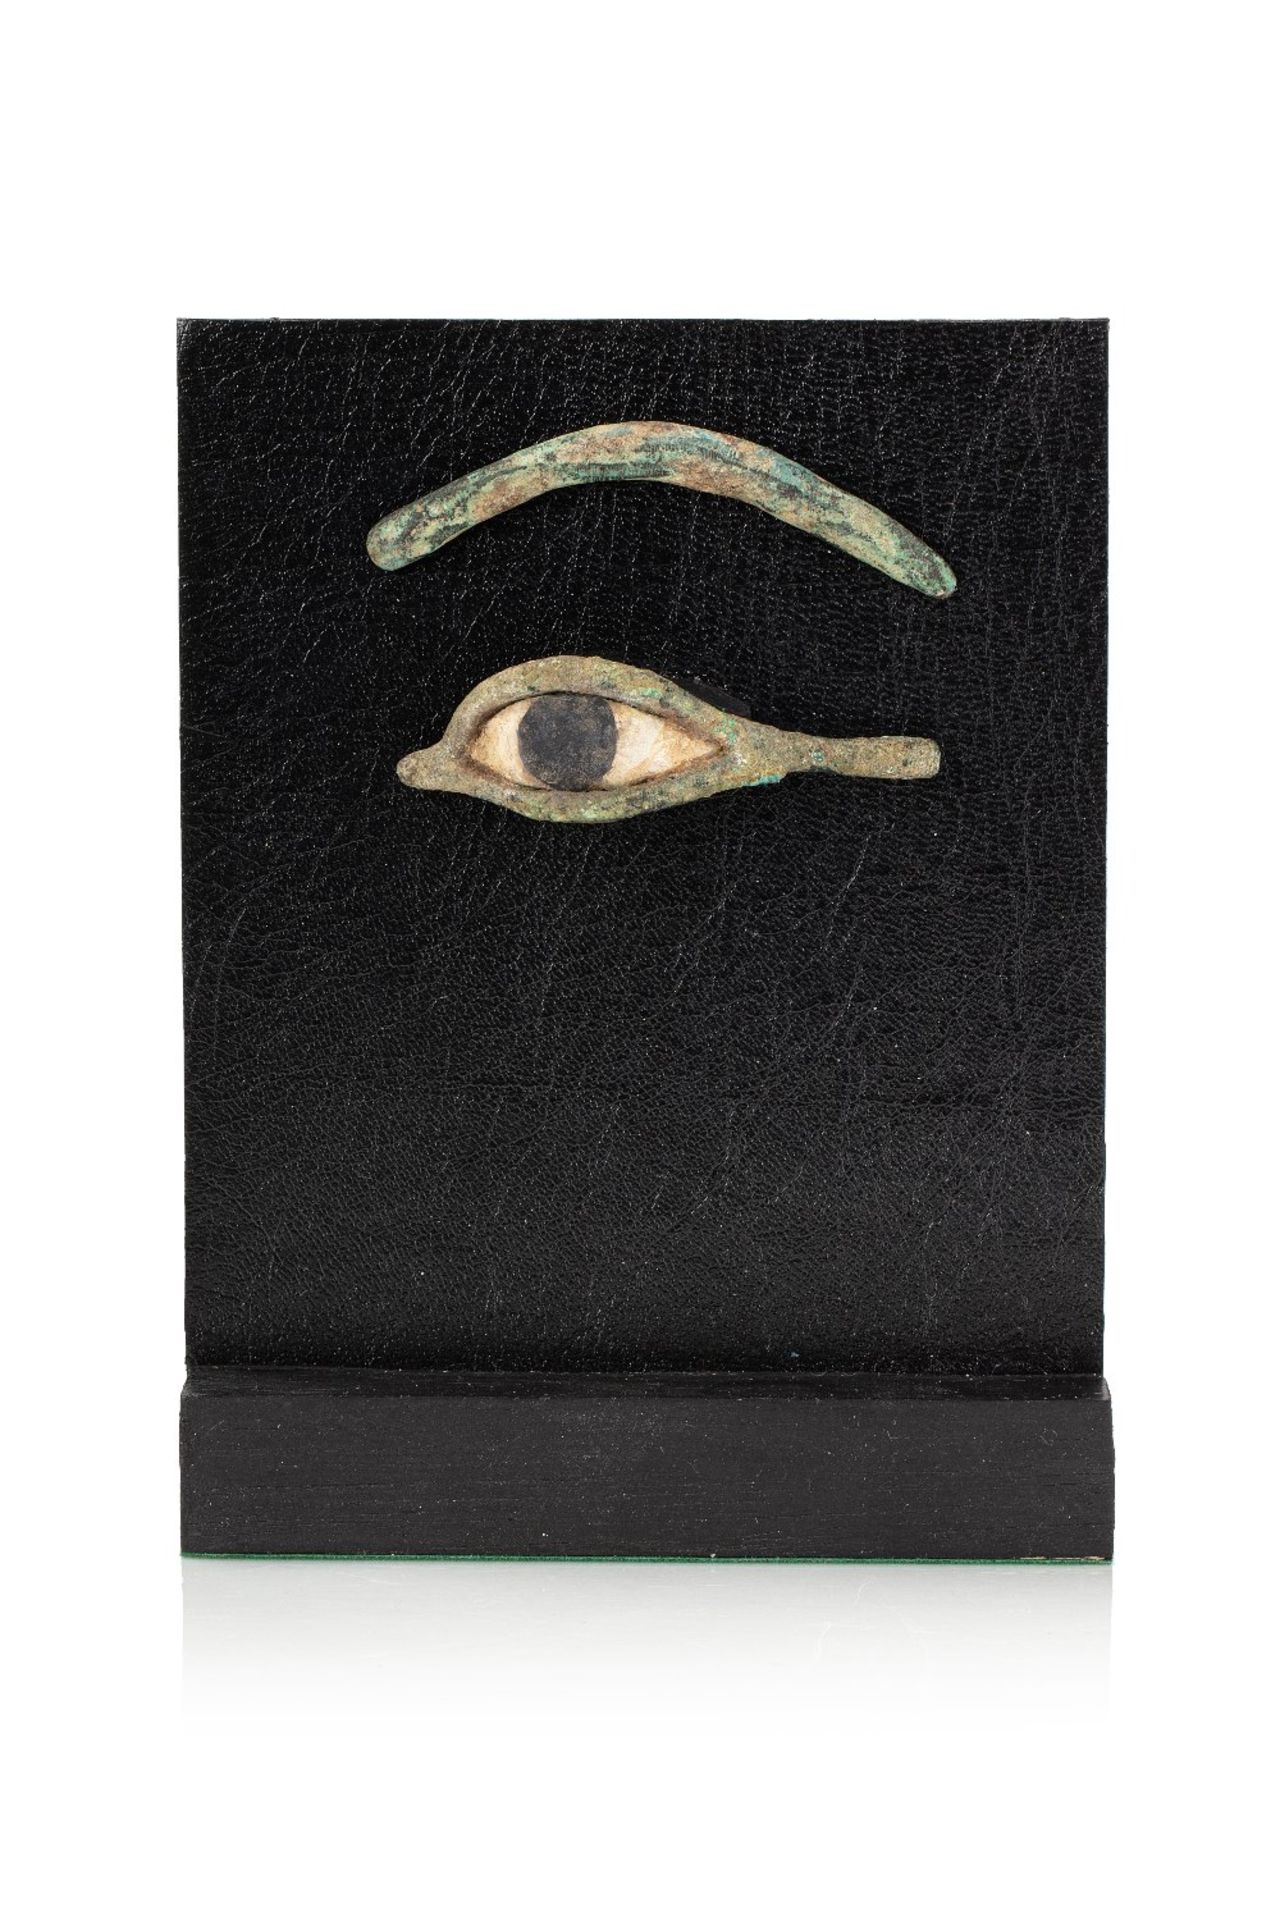 Oeil gauche d'inscrustation de masque de sarcophageBronze à patine verte croûteuse Calcaire. Egypte,